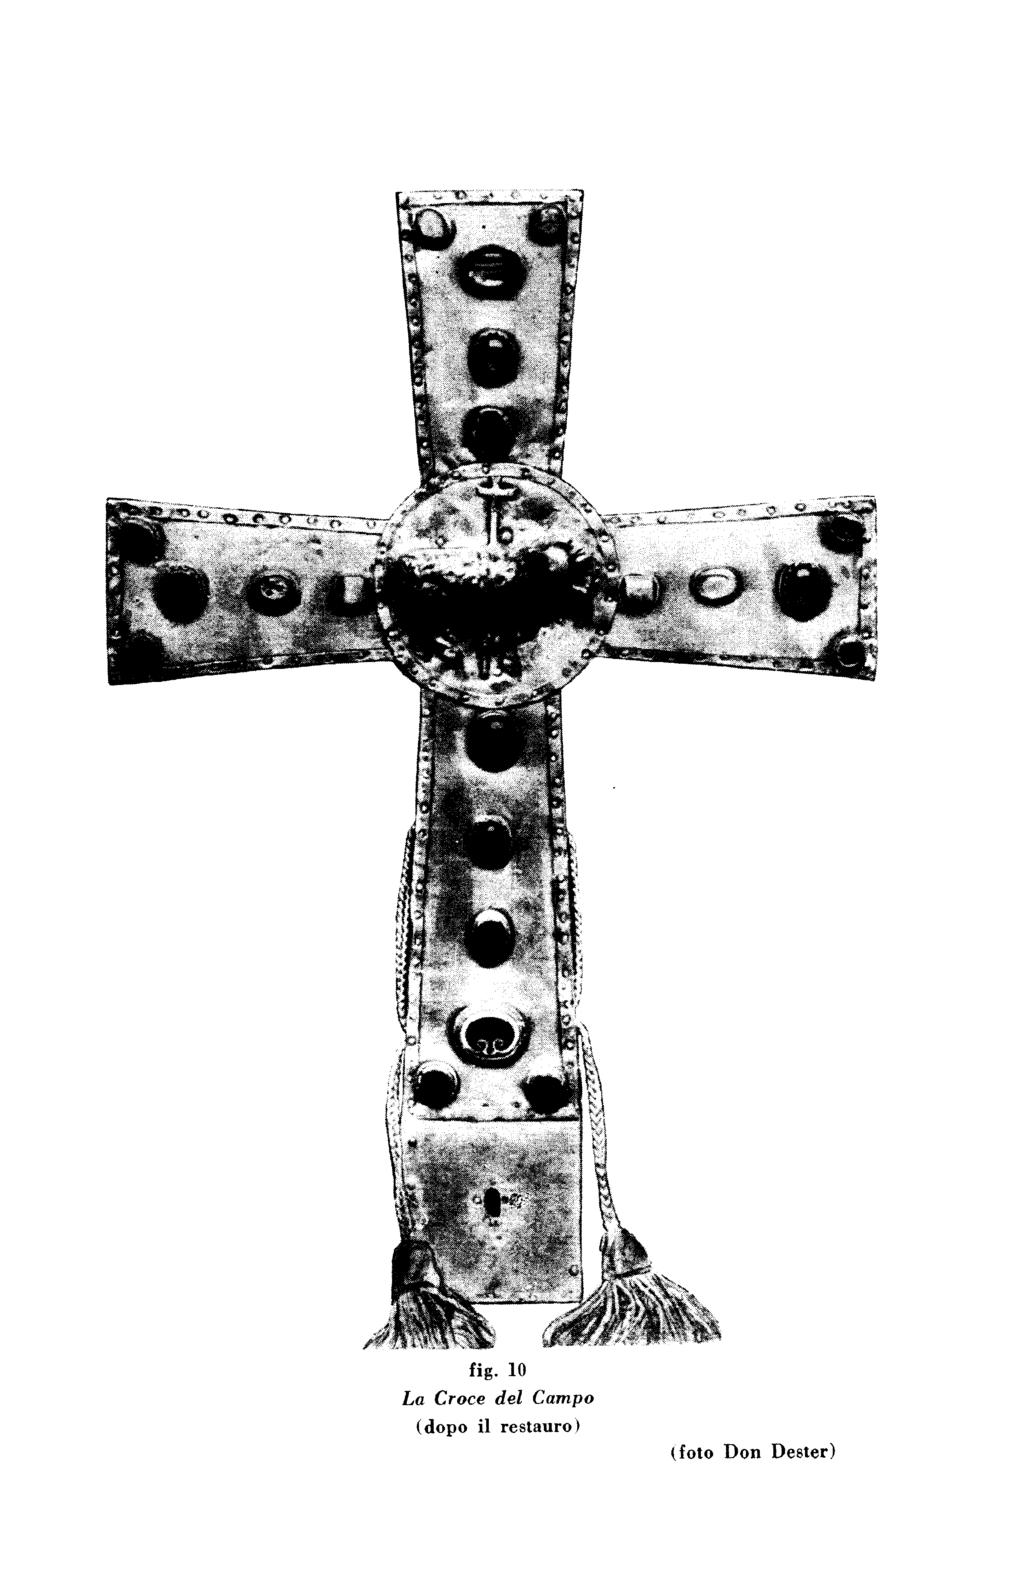 fig. 10 La Croce del Campo